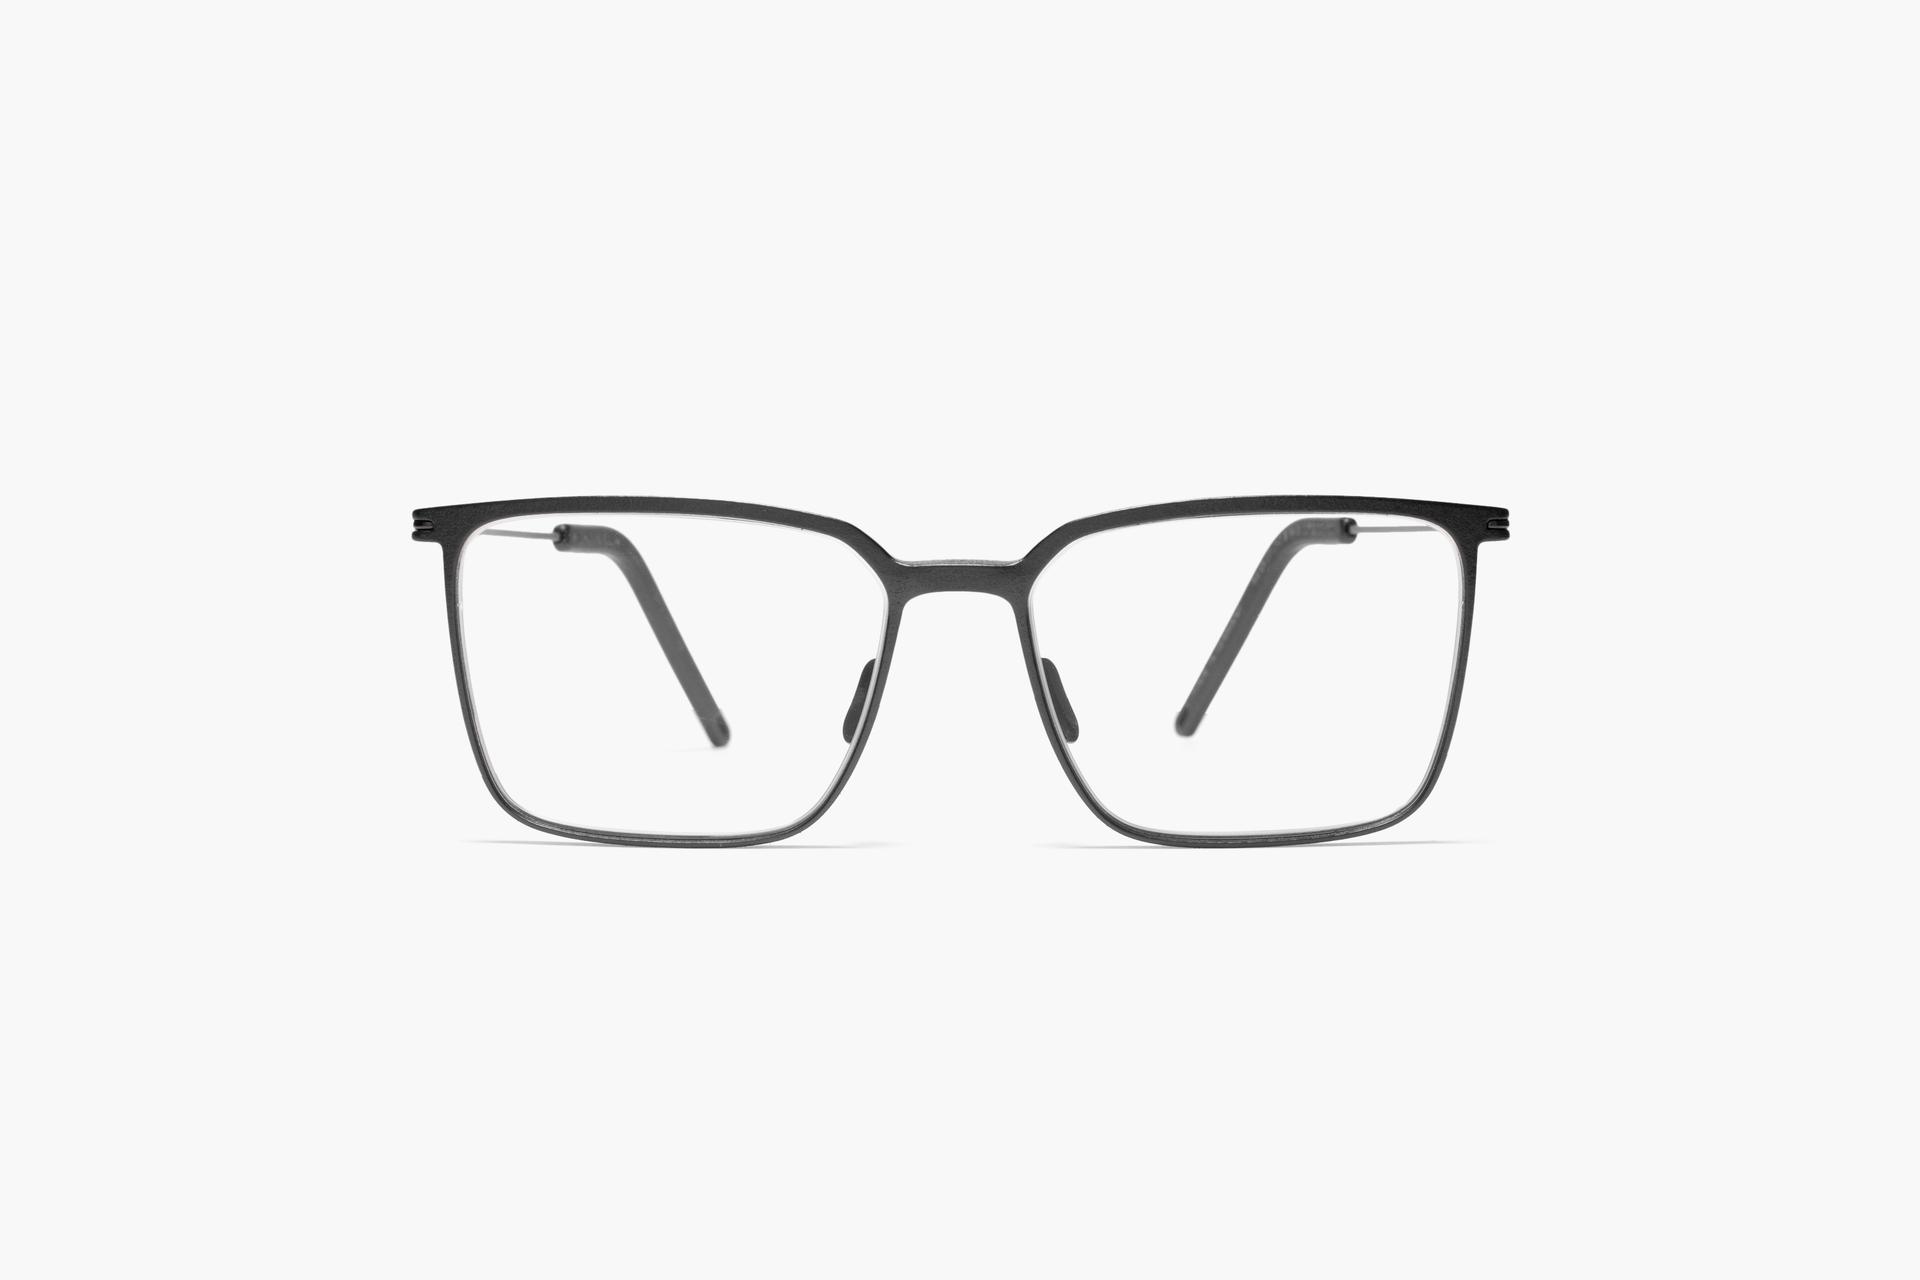 KLENZE & BAUM, Prova i migliori occhiali online e trova un ottico